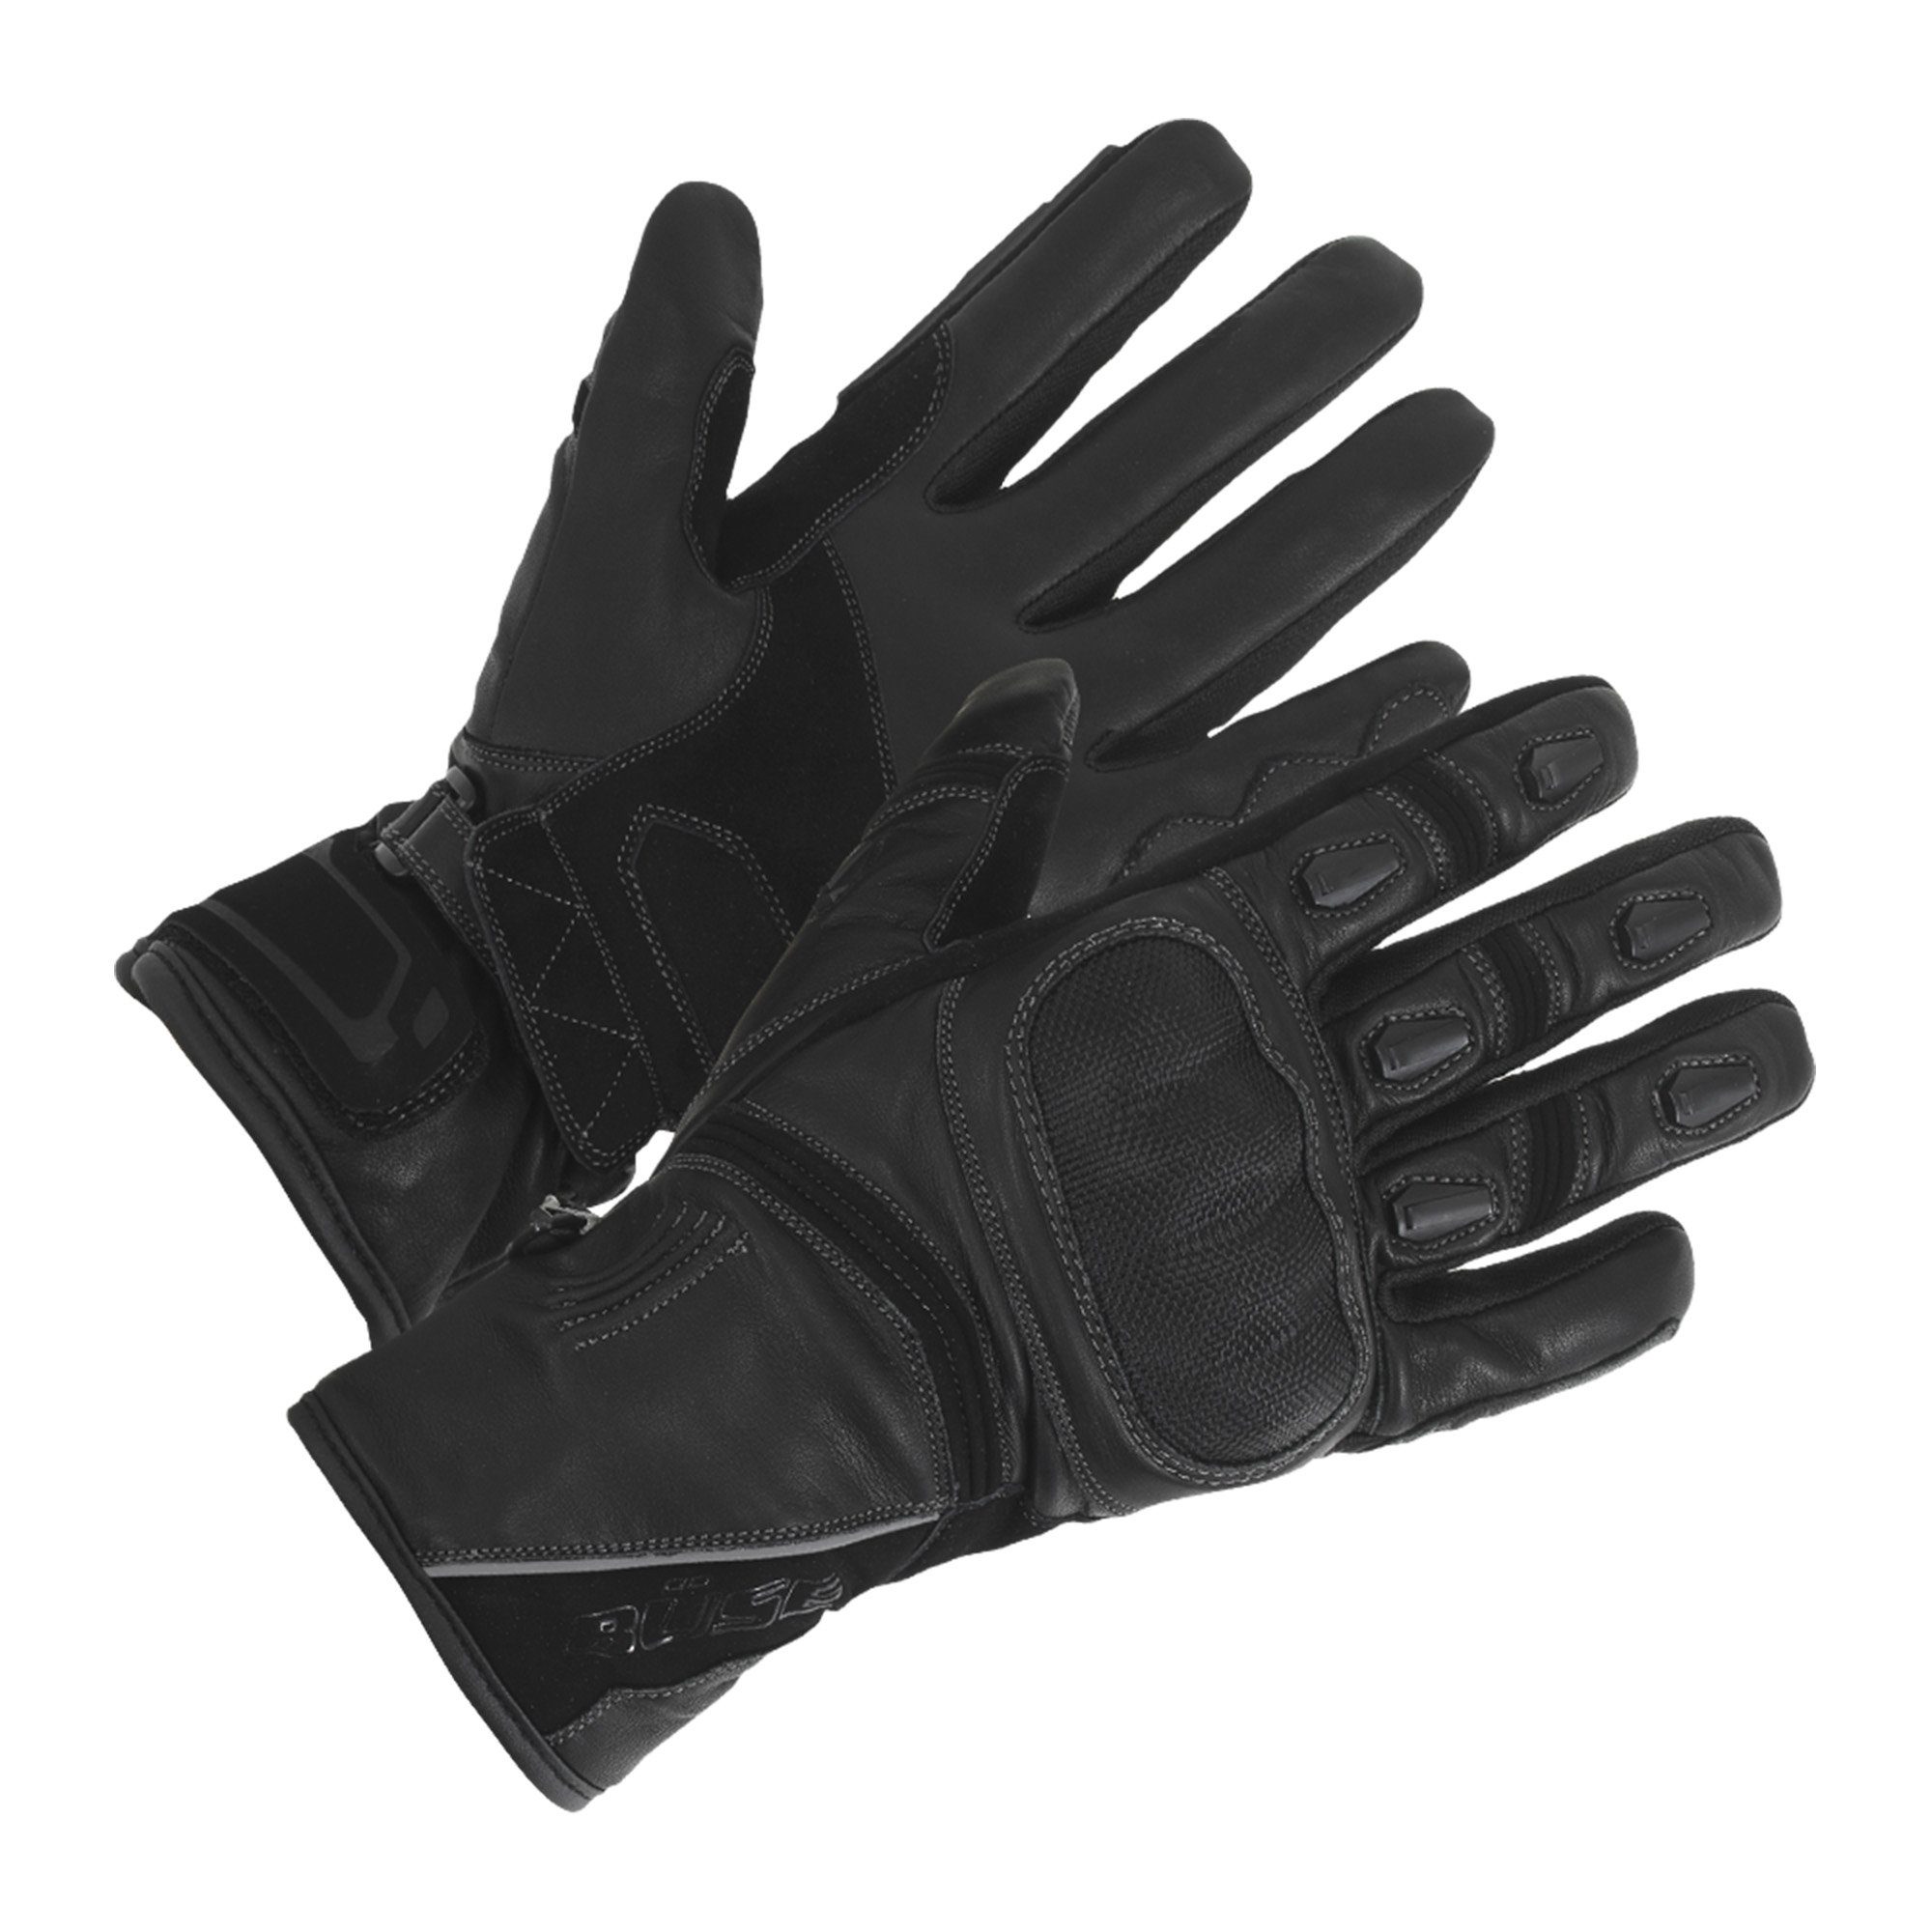 Büse Motorradhandschuhe Büse Ascari Touring wasserdicht rot atmungsaktiv schwarz winddicht schwarz, Handschuh Protektoren mit Leder